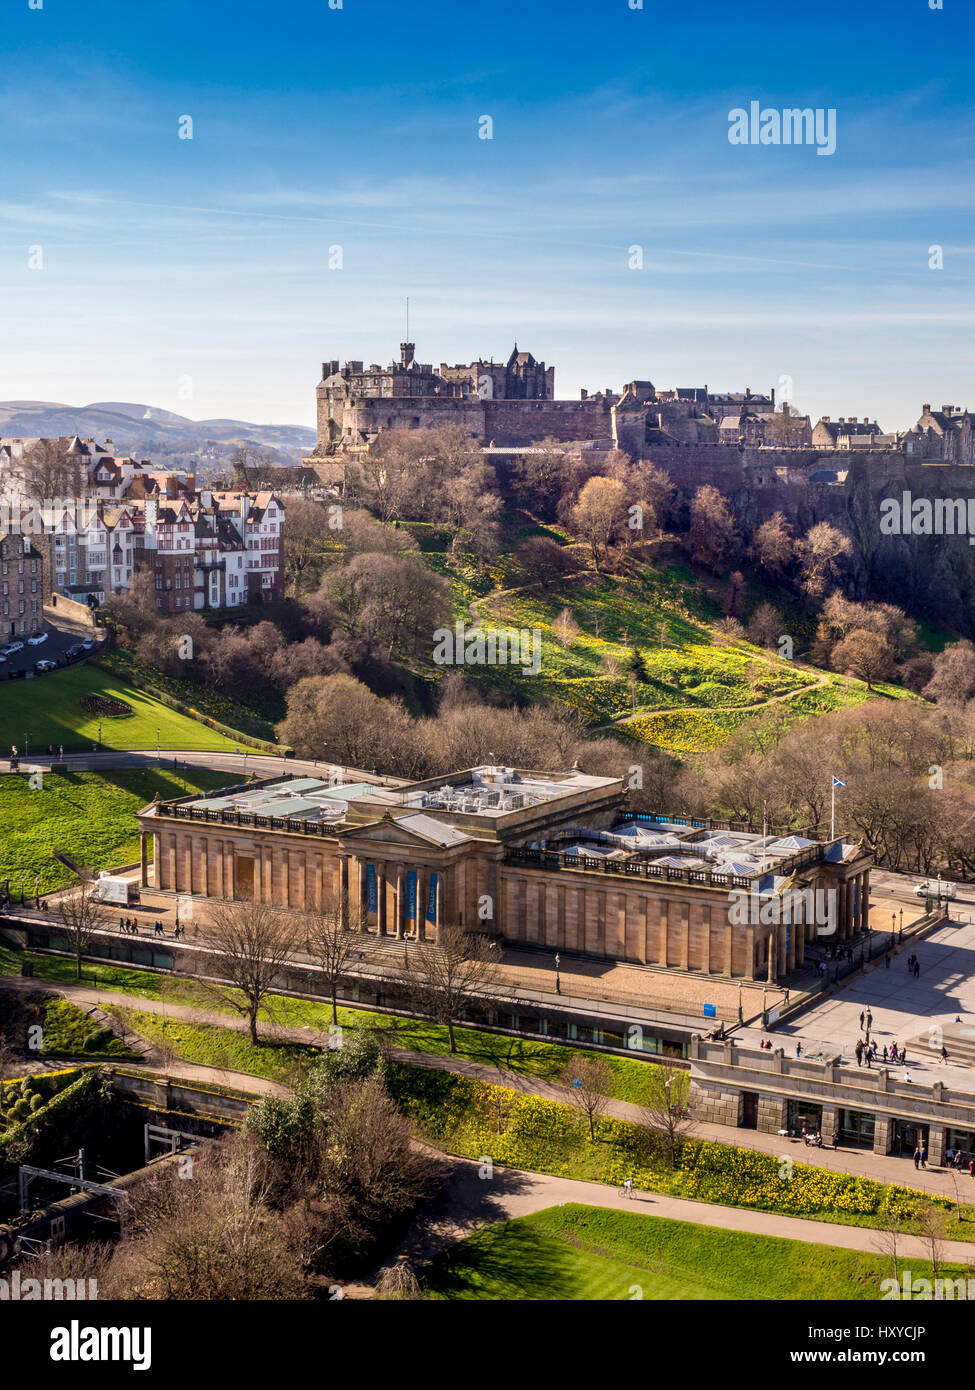 Vue aérienne de la Galerie nationale écossaise sur le Mound avec le château d'Édimbourg au loin. Édimbourg, Écosse, Royaume-Uni. Banque D'Images